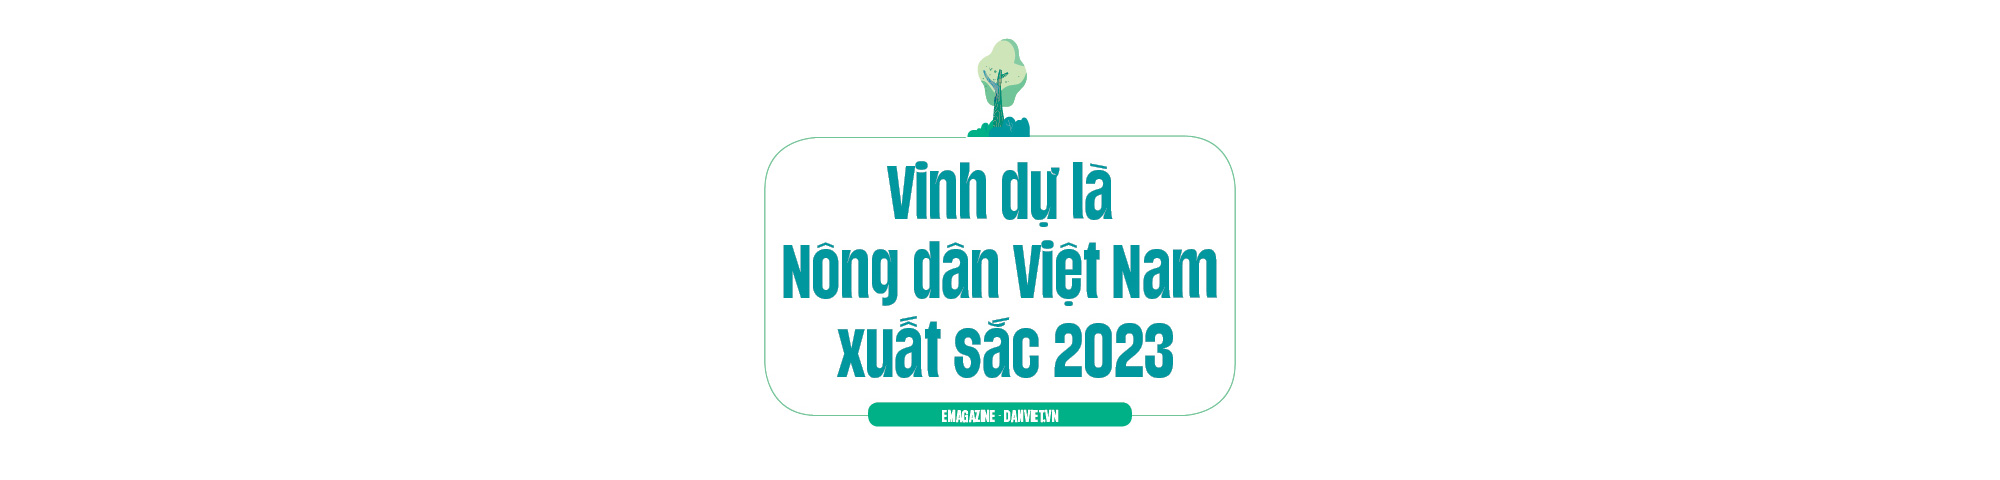 Trai 9X Lâm Đồng trồng 40ha cây ăn trái hữu cơ, được chọn là nông dân Việt Nam xuất sắc 2023 - Ảnh 7.